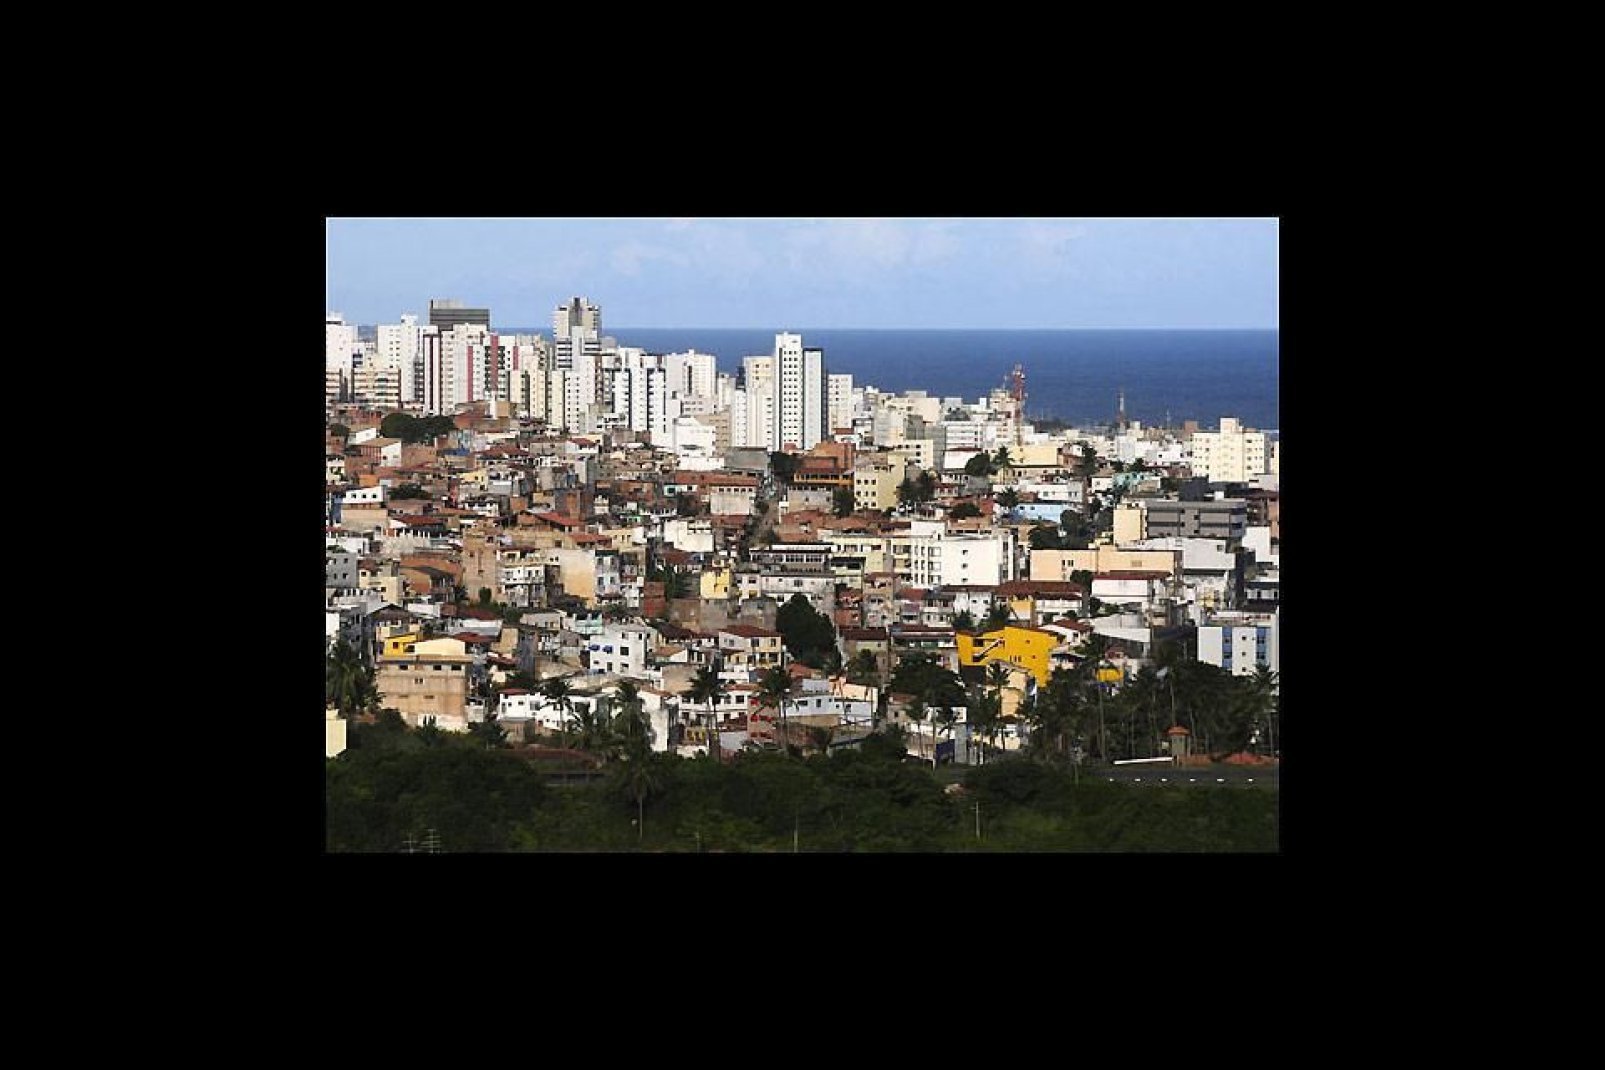 Una ciudad repleta de contrastes entre favelas y modernos rascacielos.